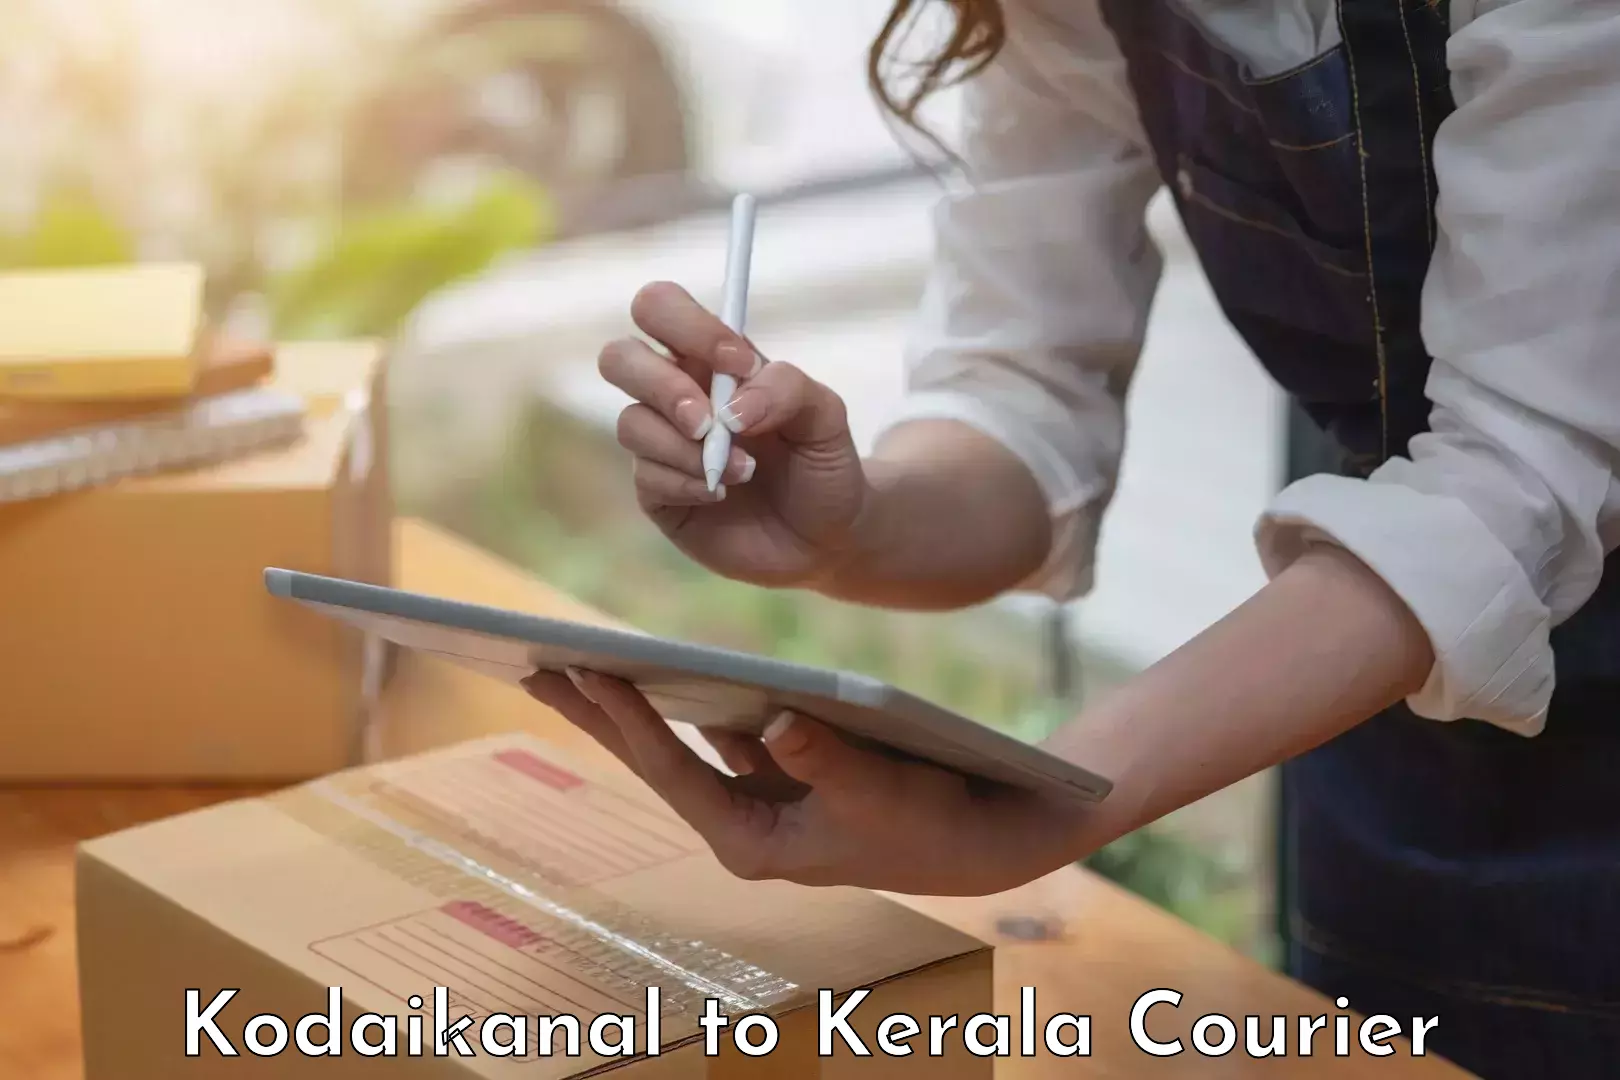 Reliable moving assistance Kodaikanal to Ernakulam